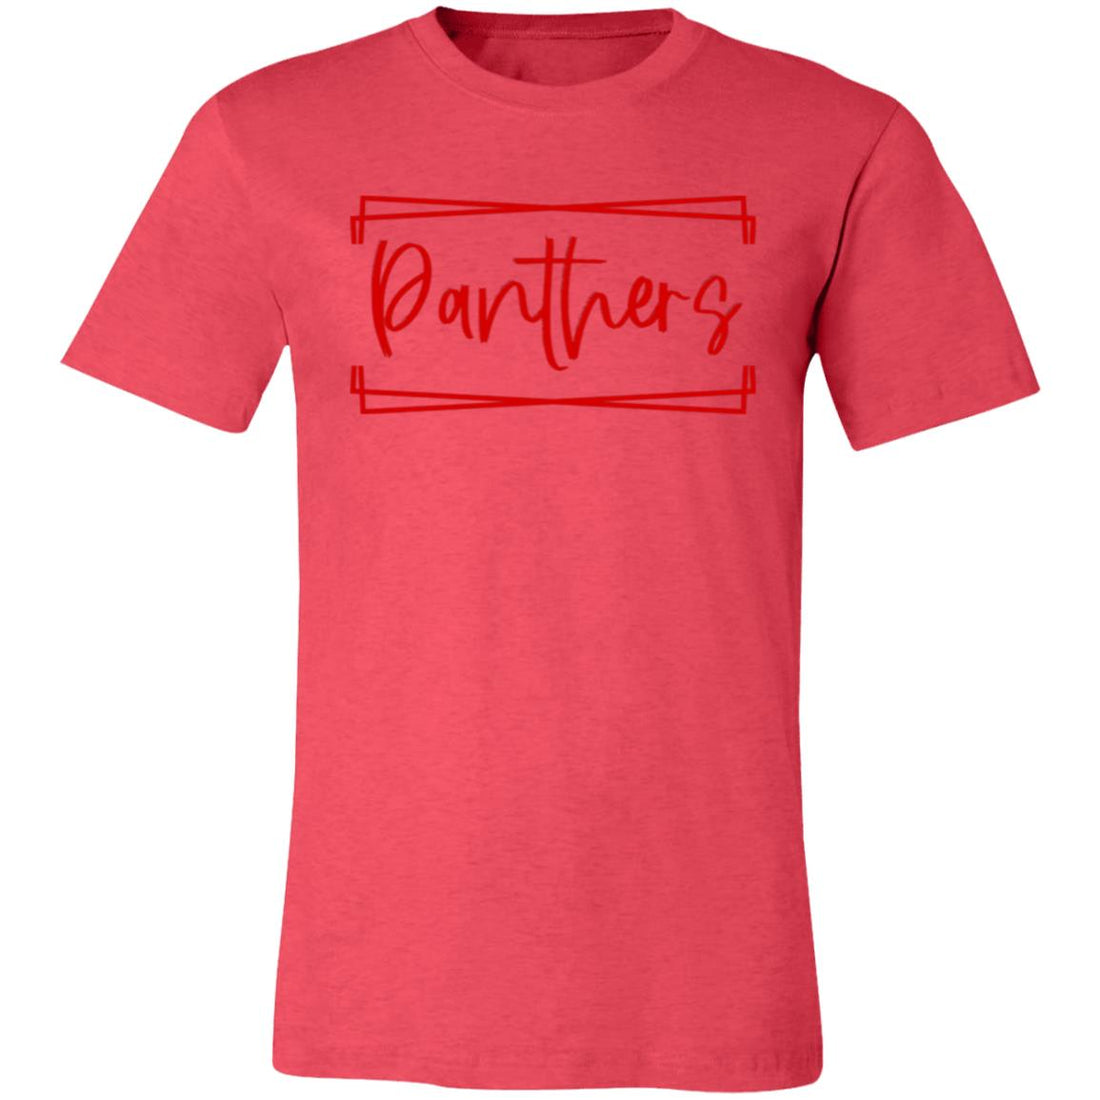 Panthers Box T-Shirt - T-Shirts - Positively Sassy - Panthers Box T-Shirt